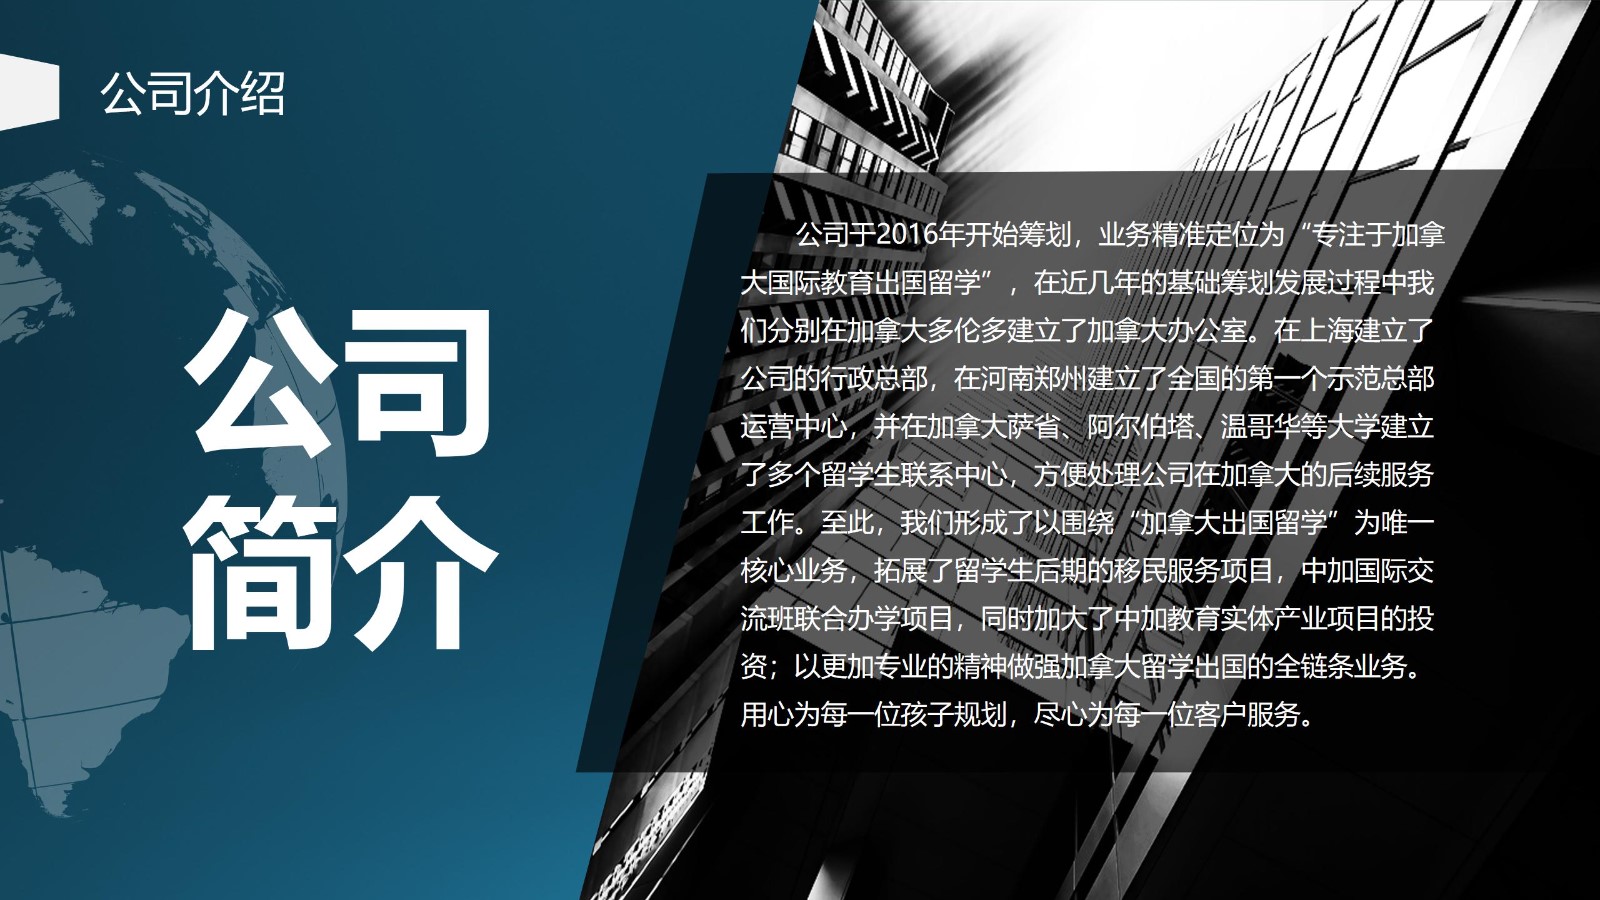 网站用上海博桥留学加盟说明 - 副本_04.jpg